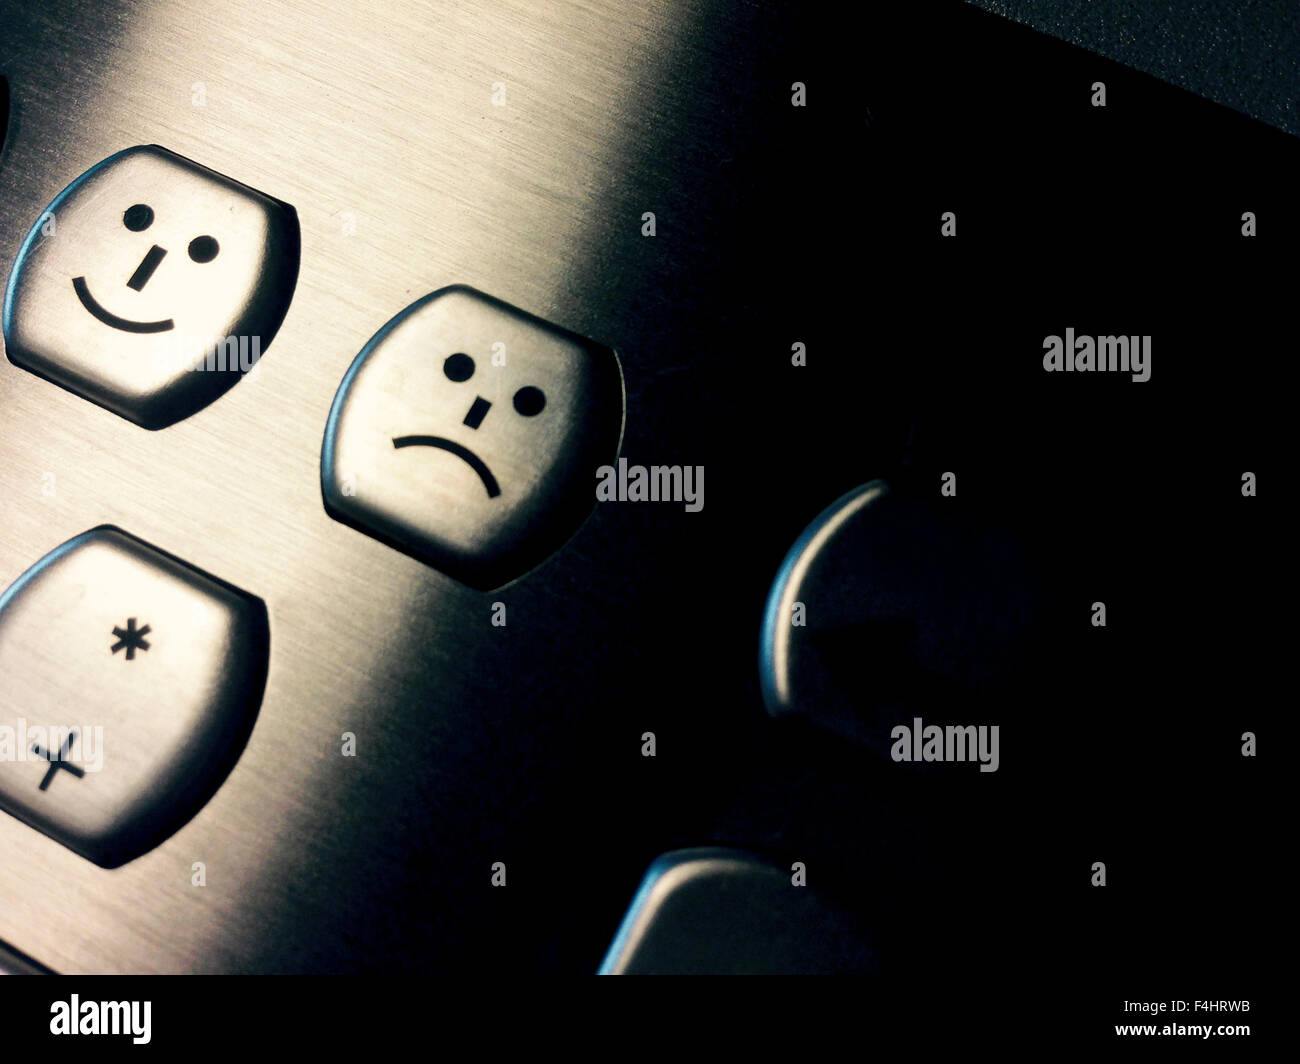 Aluminium pc Tastatur Nahaufnahme mit Lächeln und traurige Gesichter  Stockfotografie - Alamy